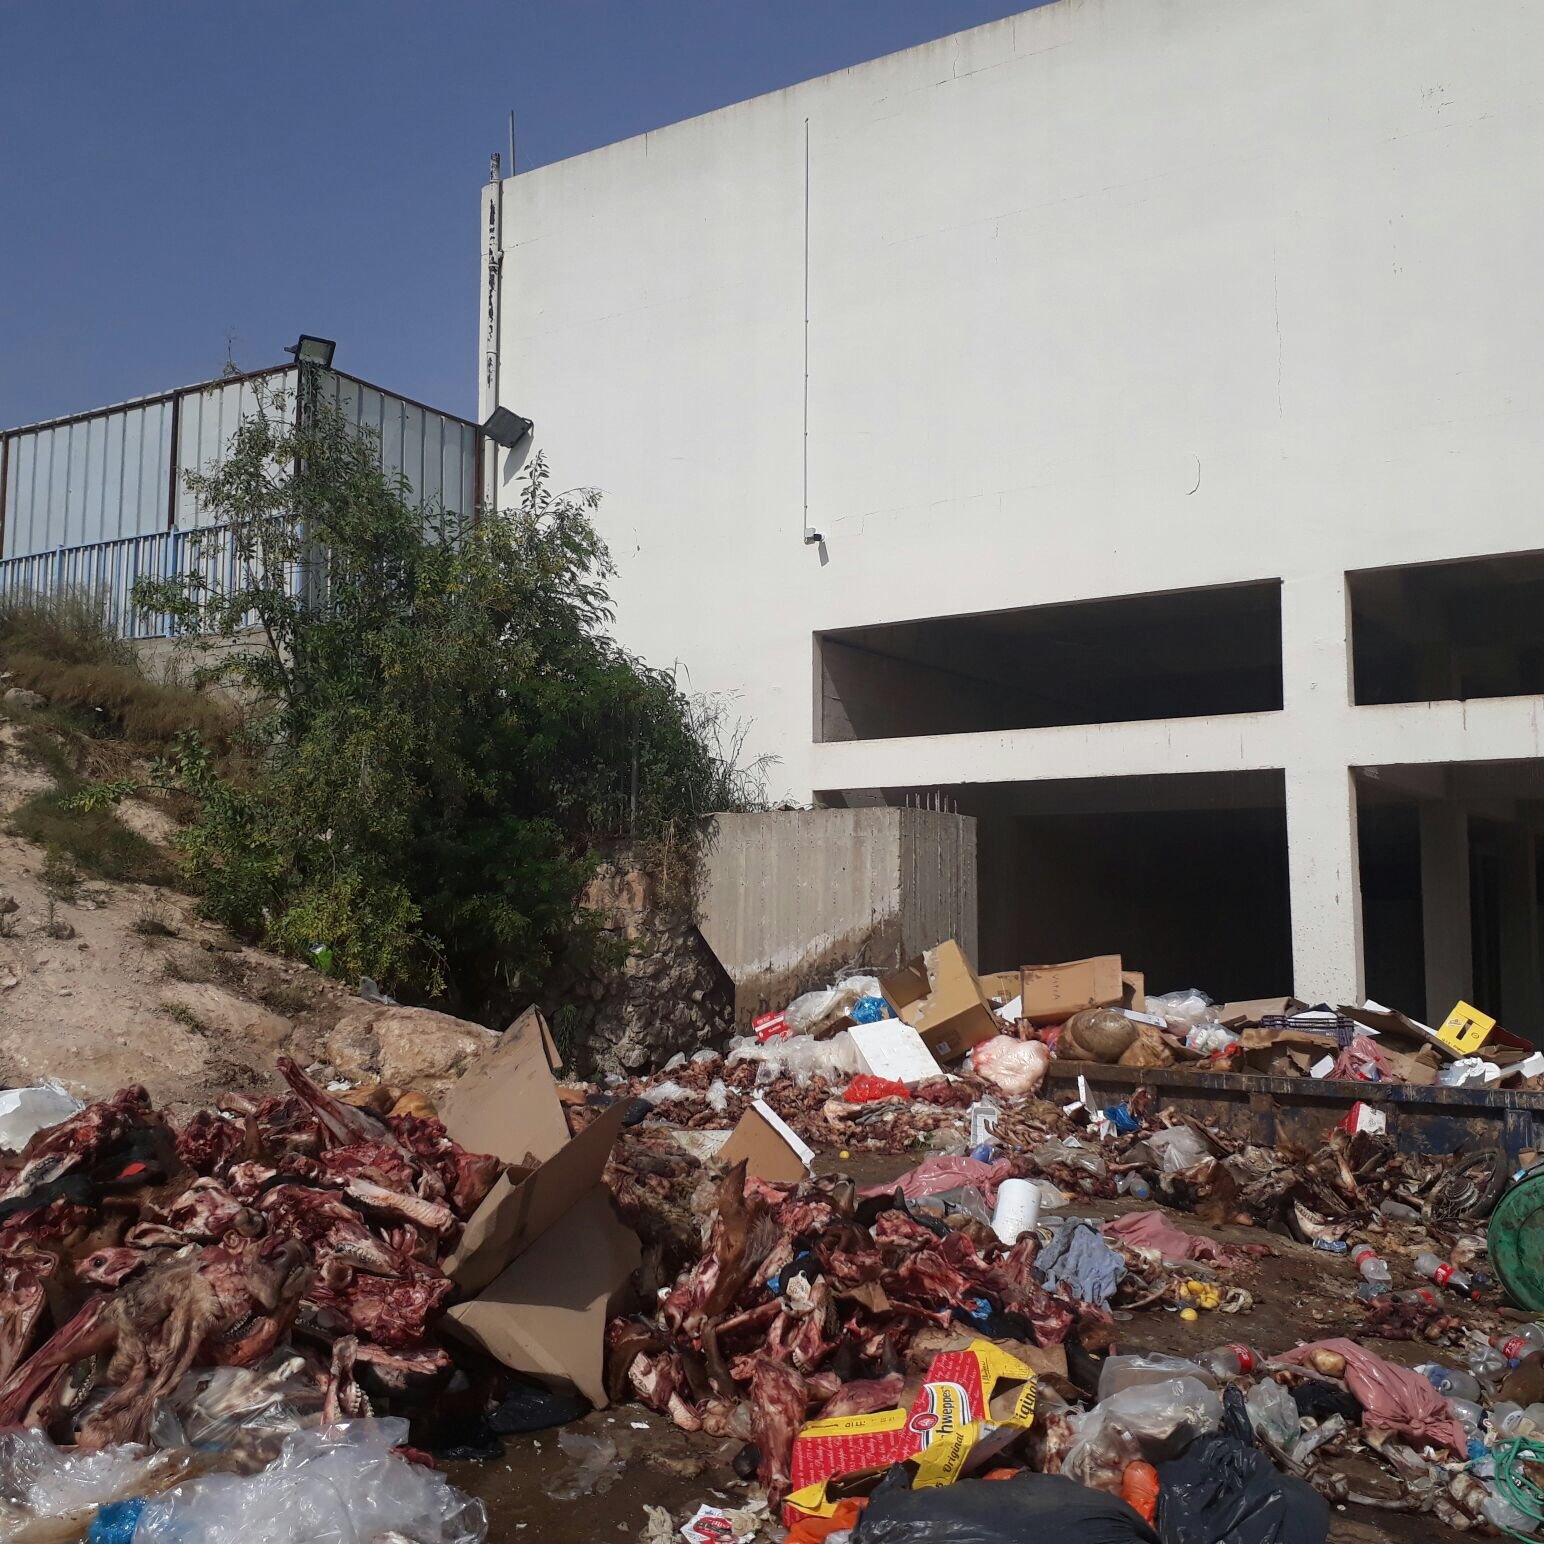 "المركزيّة" بحيفا تصدر قرارا يلزم بلدية شفاعمرو بتنظيف النفايات المتراكمة بجنب المسلخ البلدي-2